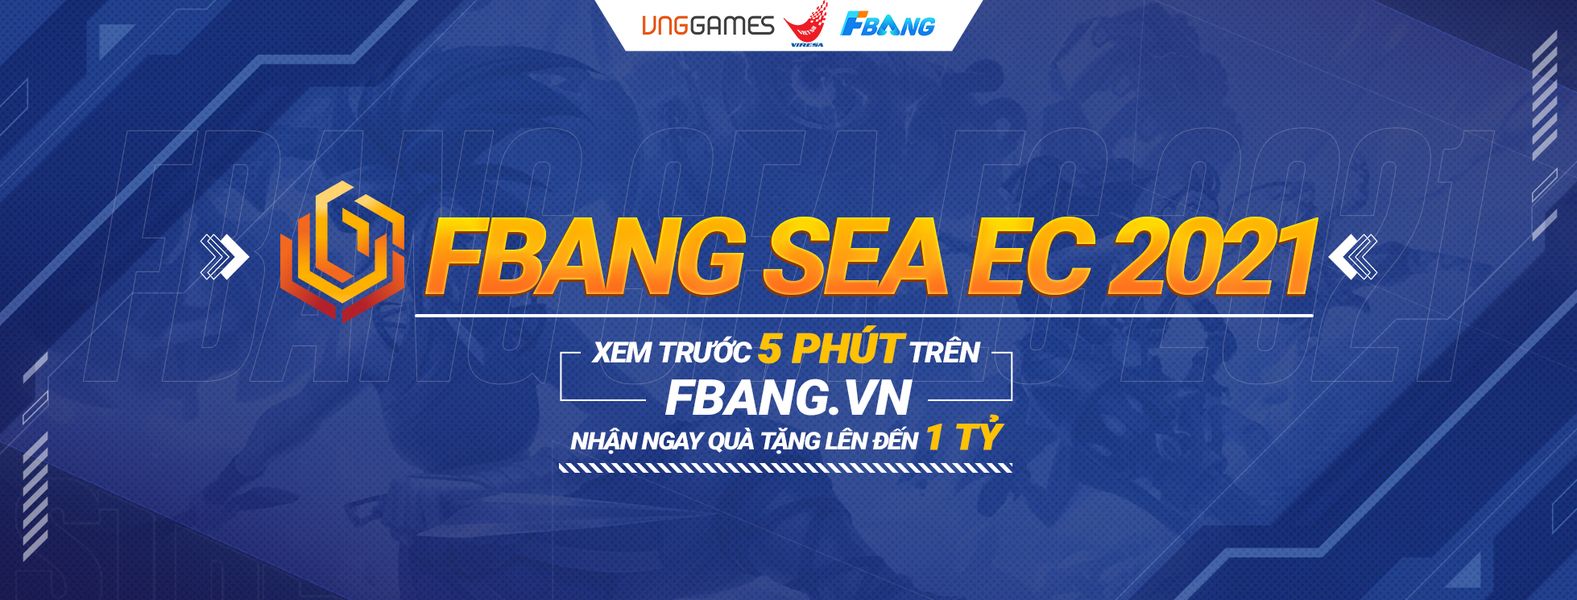 Bạn biết gì về nhà tài trợ FBANG của Giải thể thao điện tử Đông Nam Á?